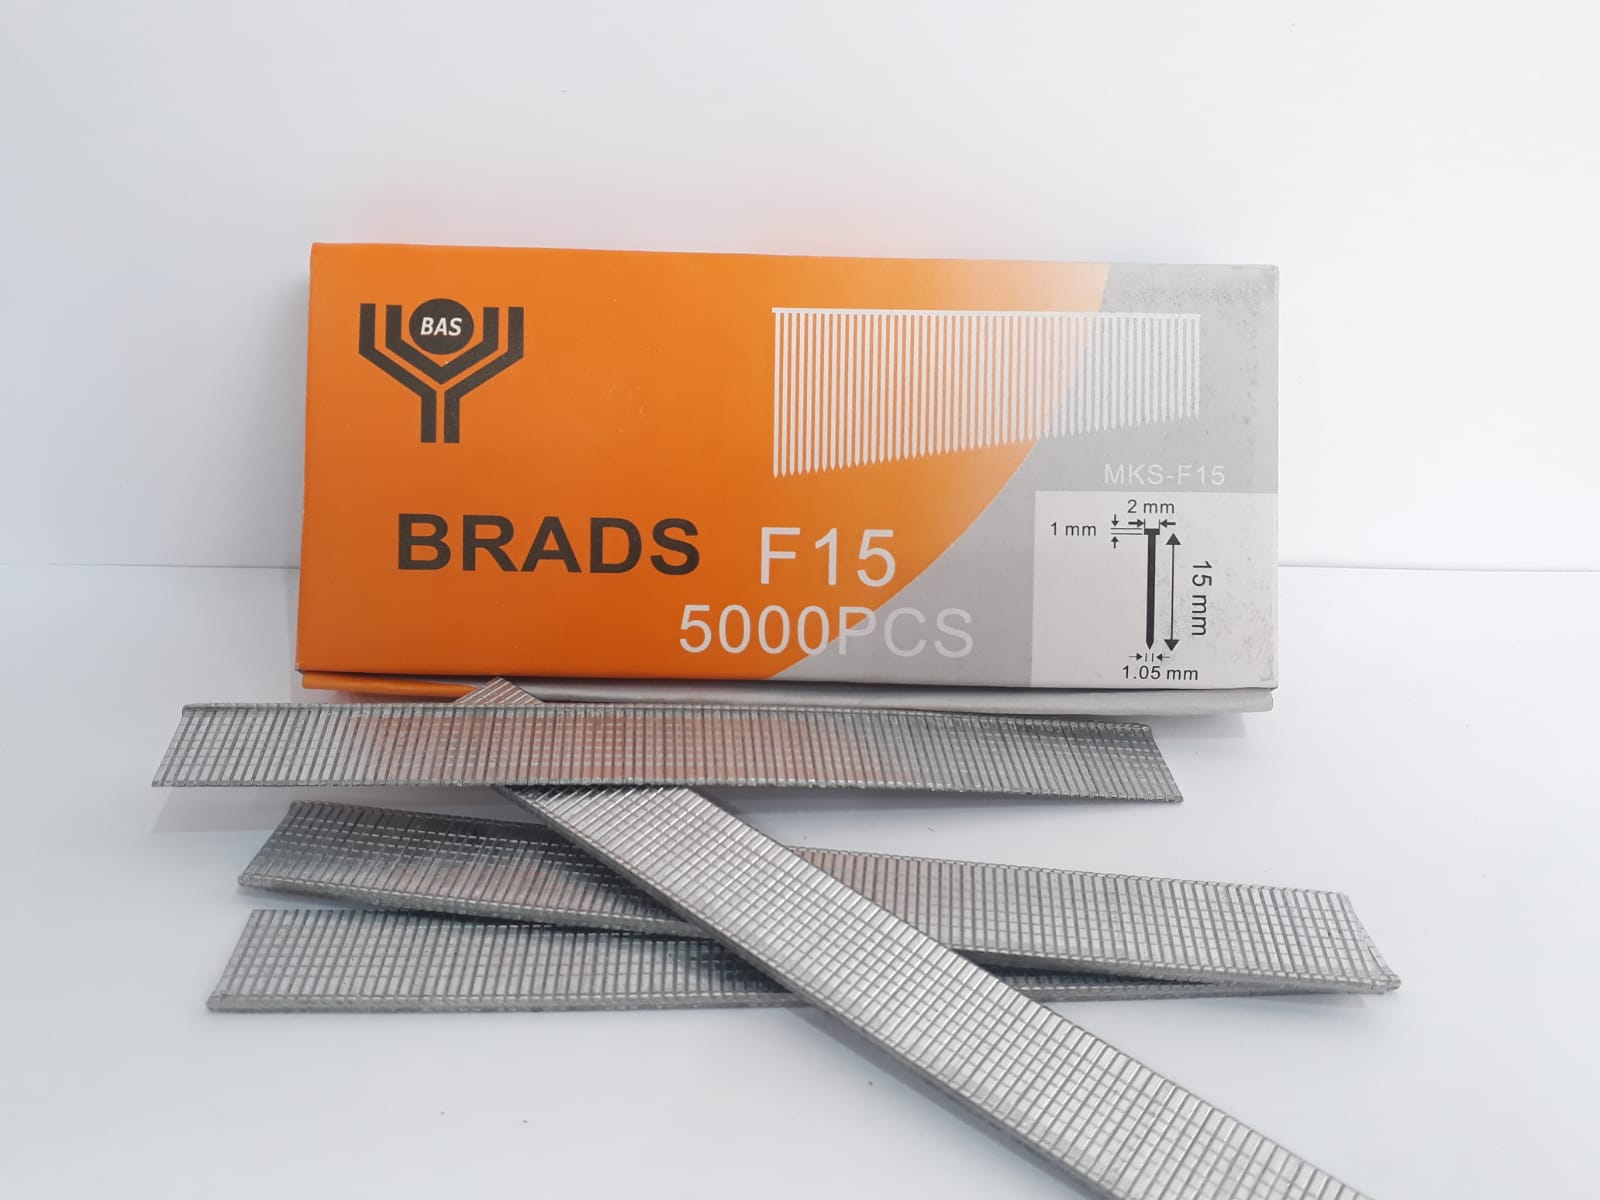 F nails / Brad nails 18 gauge / T nails / Sn pins/ PO nails / air nails - BAS kuwait